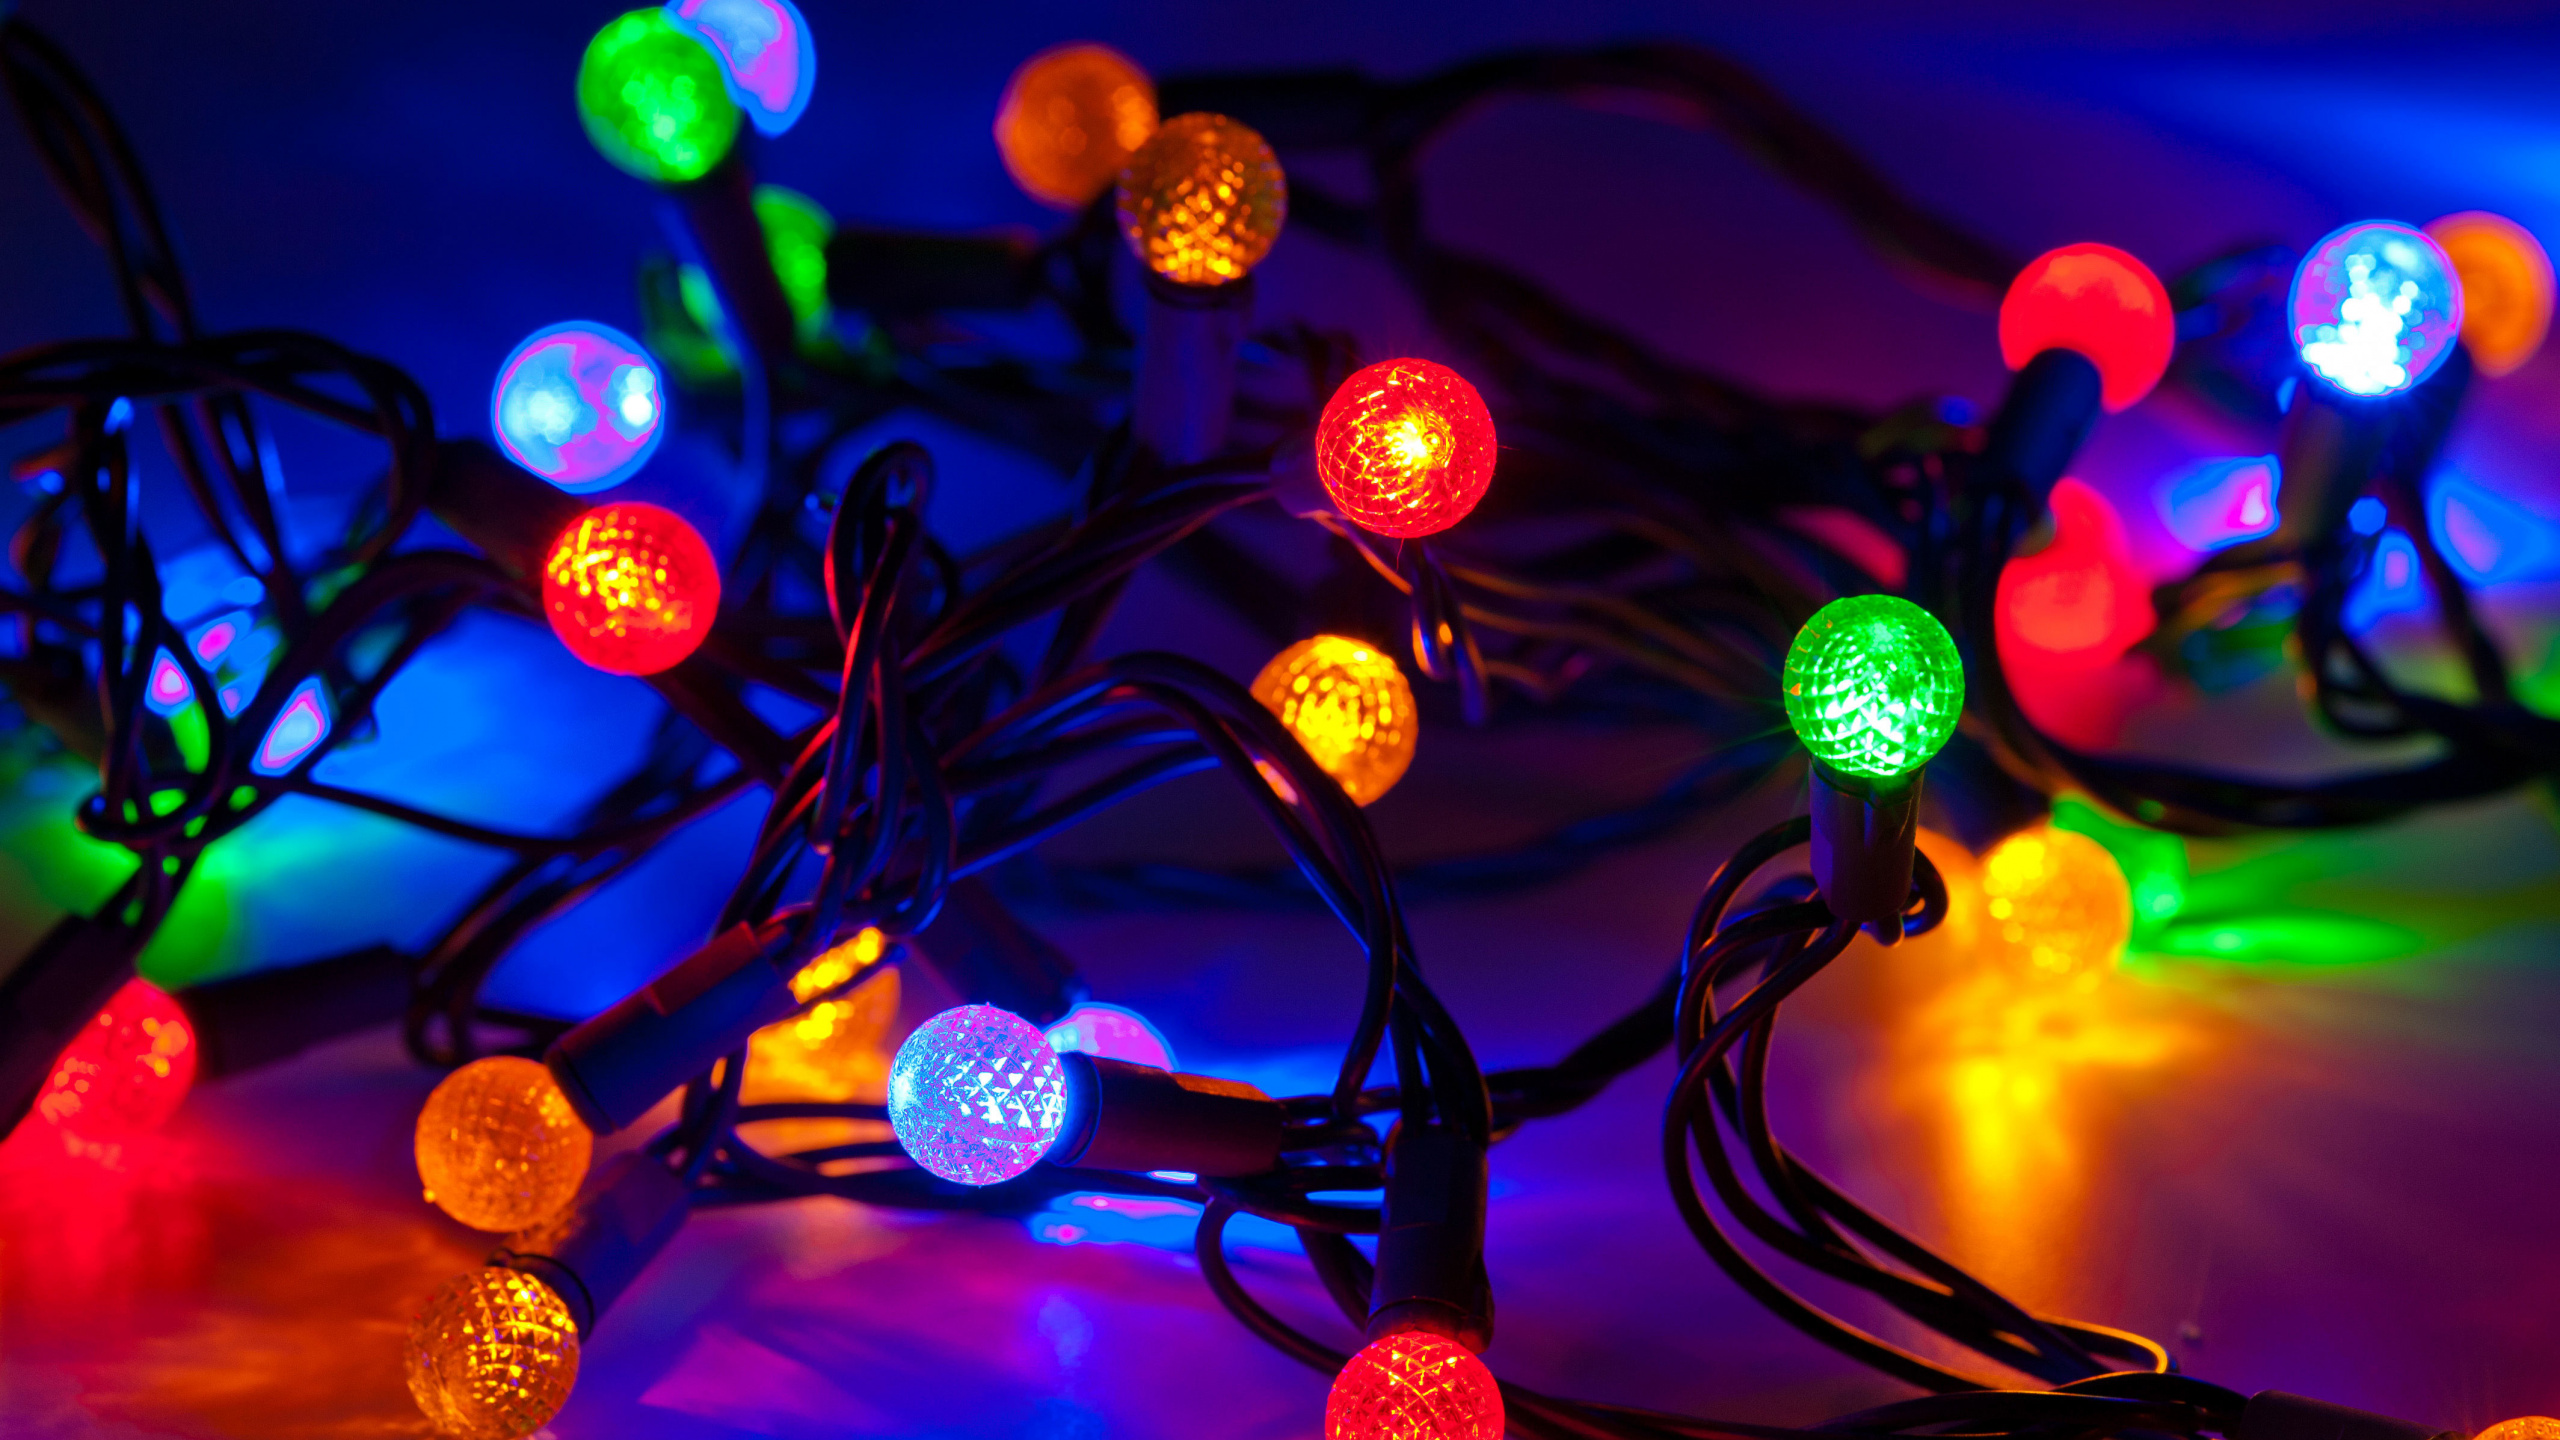 圣诞彩灯, 圣诞节那天, 光, 圣诞装饰, 发光二极管 壁纸 2560x1440 允许